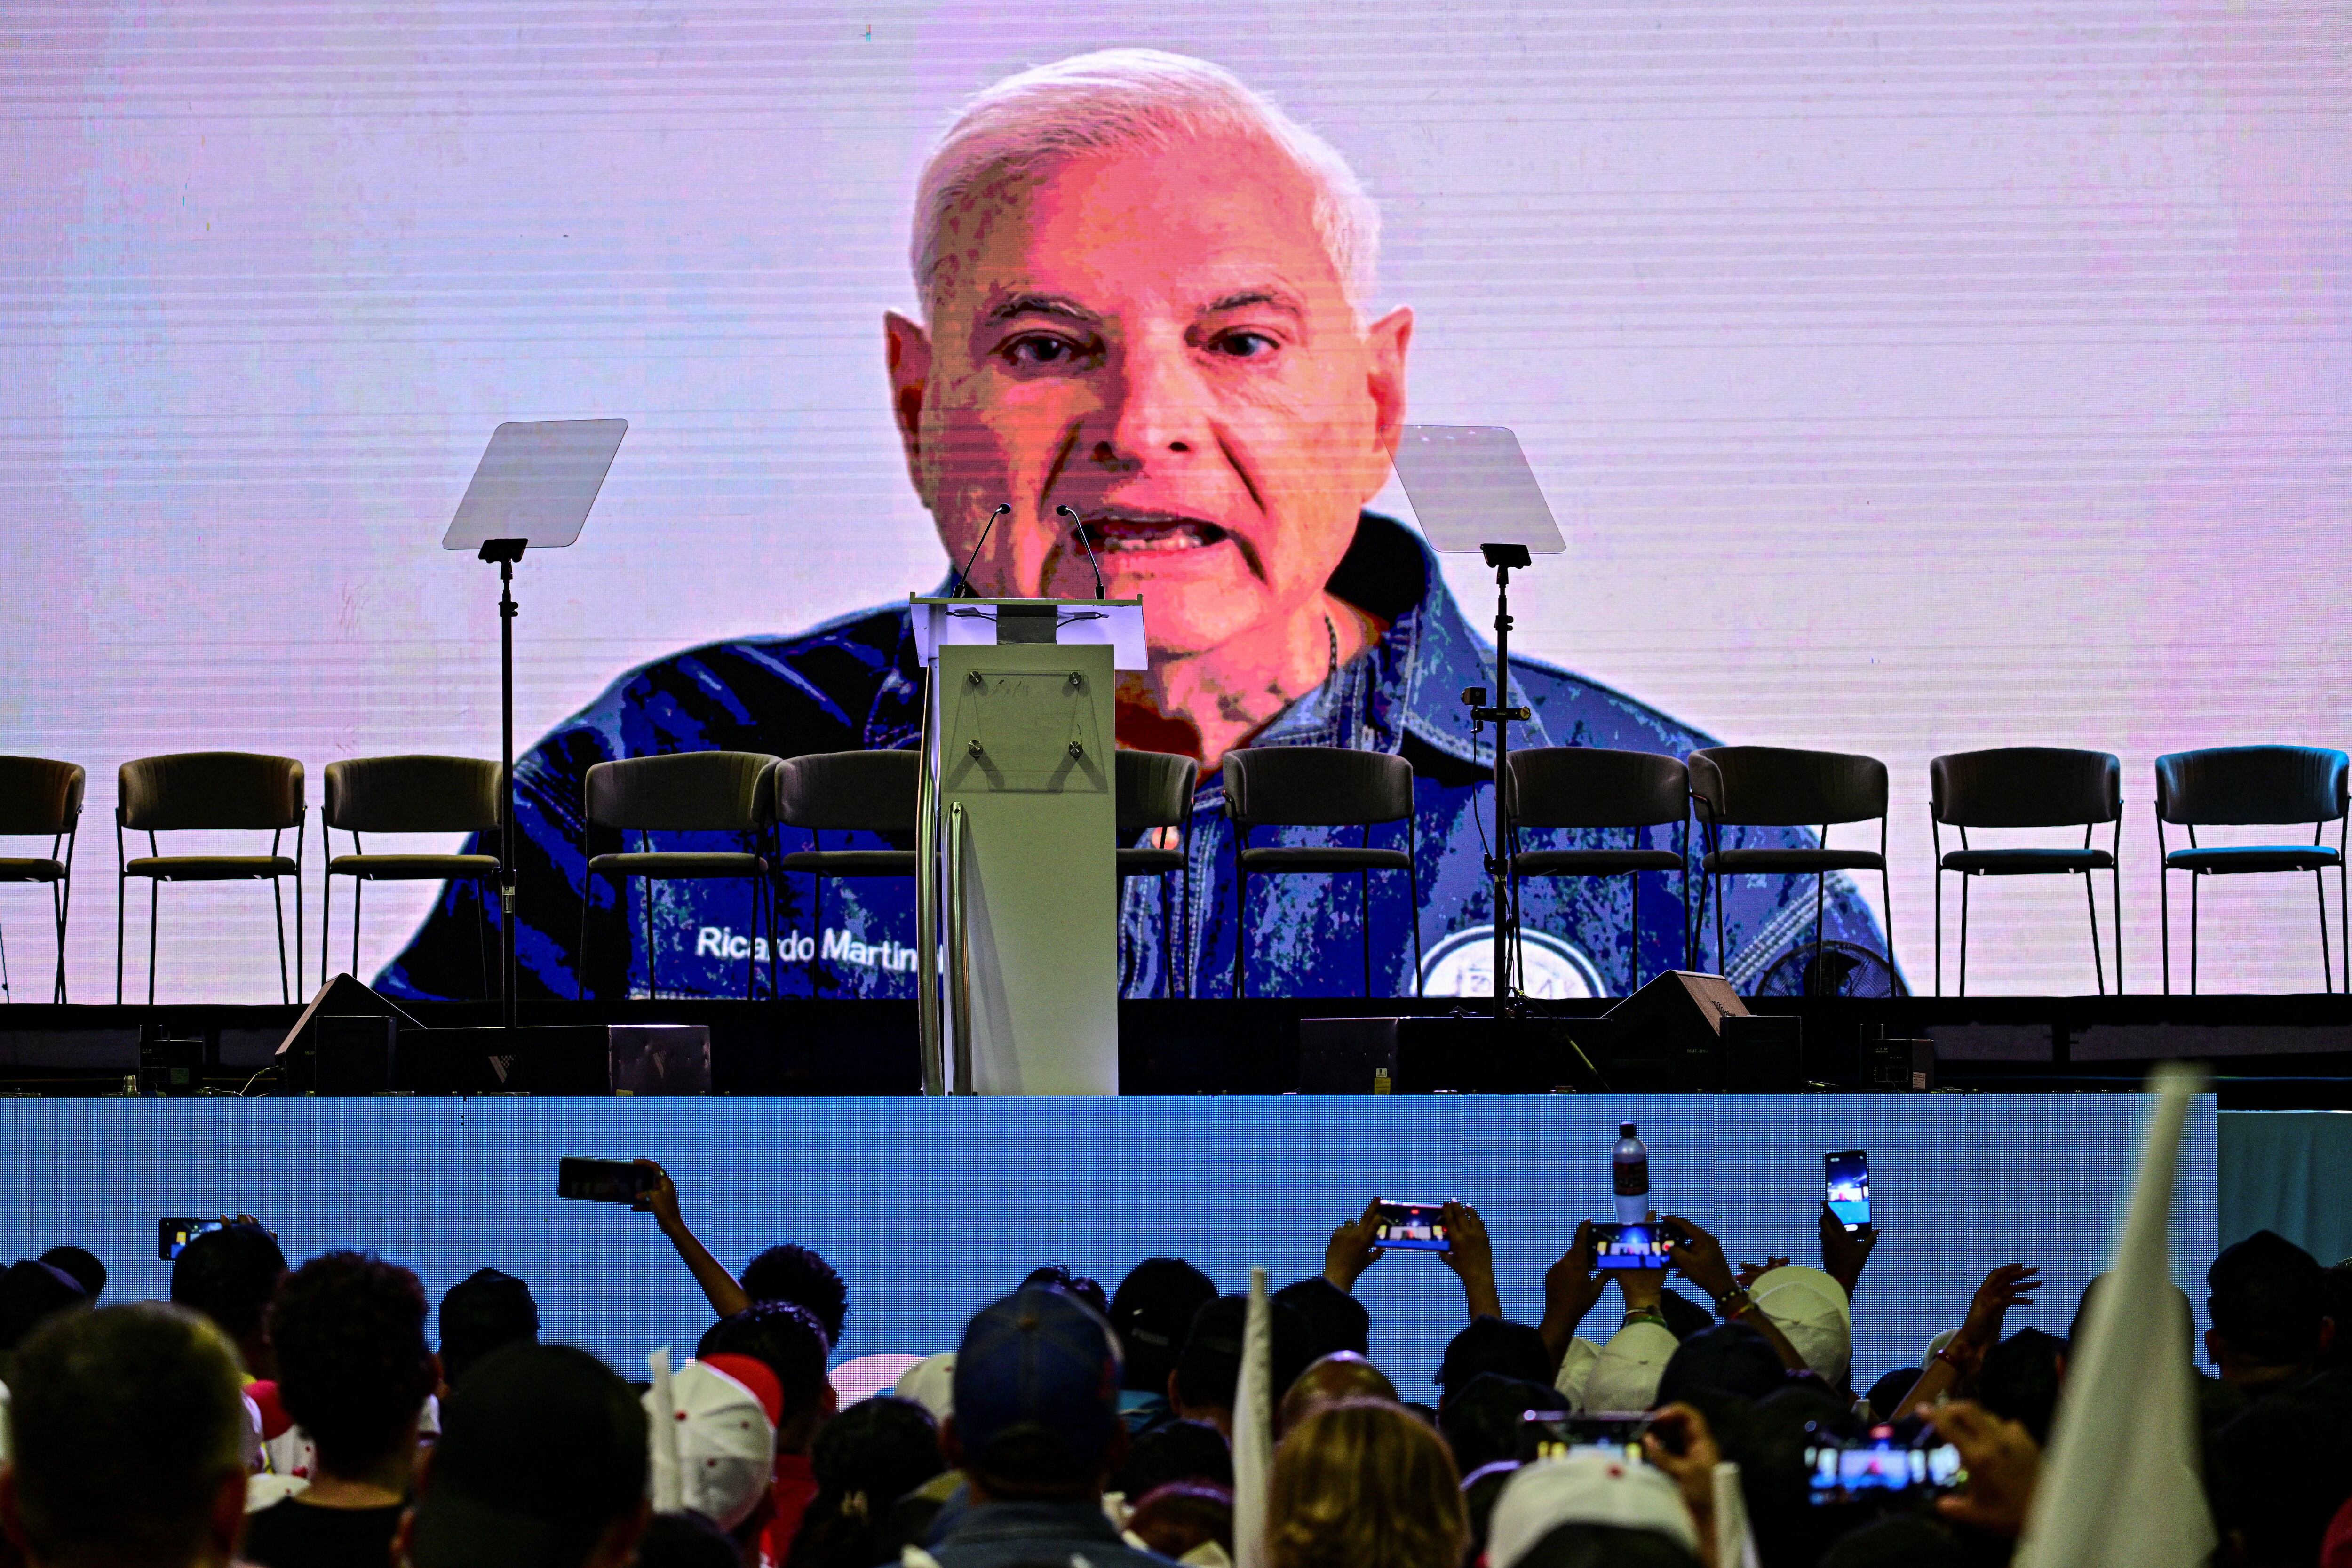 El expresidente de Panamá (2009-2014) Ricardo Martinelli -quien buscó asilo en la embajada de Nicaragua- da un discurso en línea en apoyo al candidato presidencial por el partido Realizando Metas, José Raúl Mulino. (Foto de MARTIN BERNETTI / AFP).